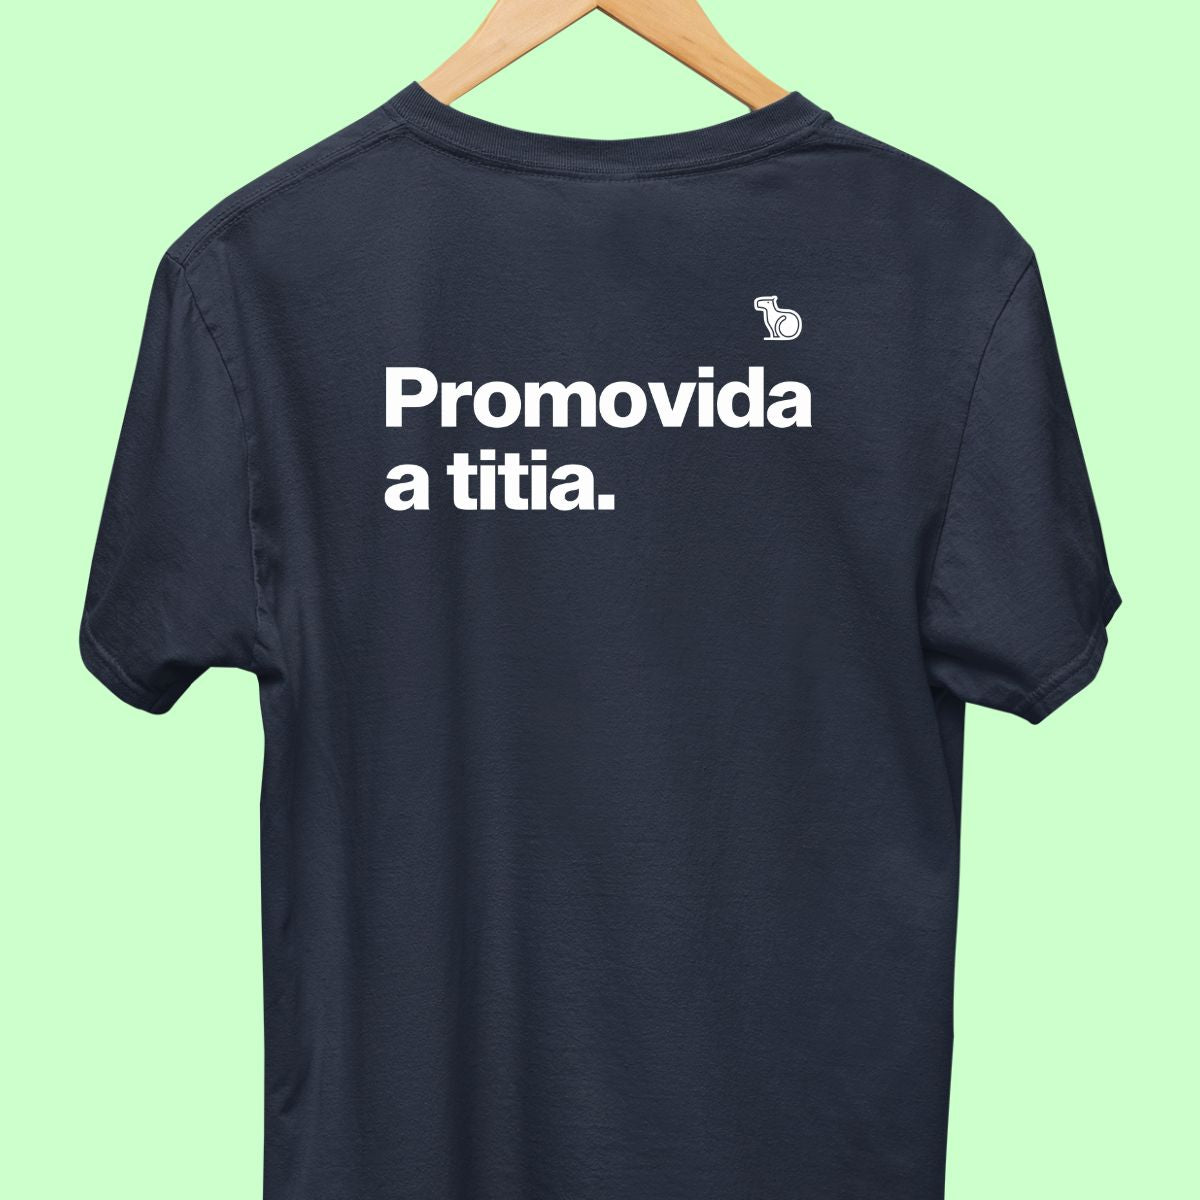 Camiseta com a frase "promovida a titia" masculina azul.